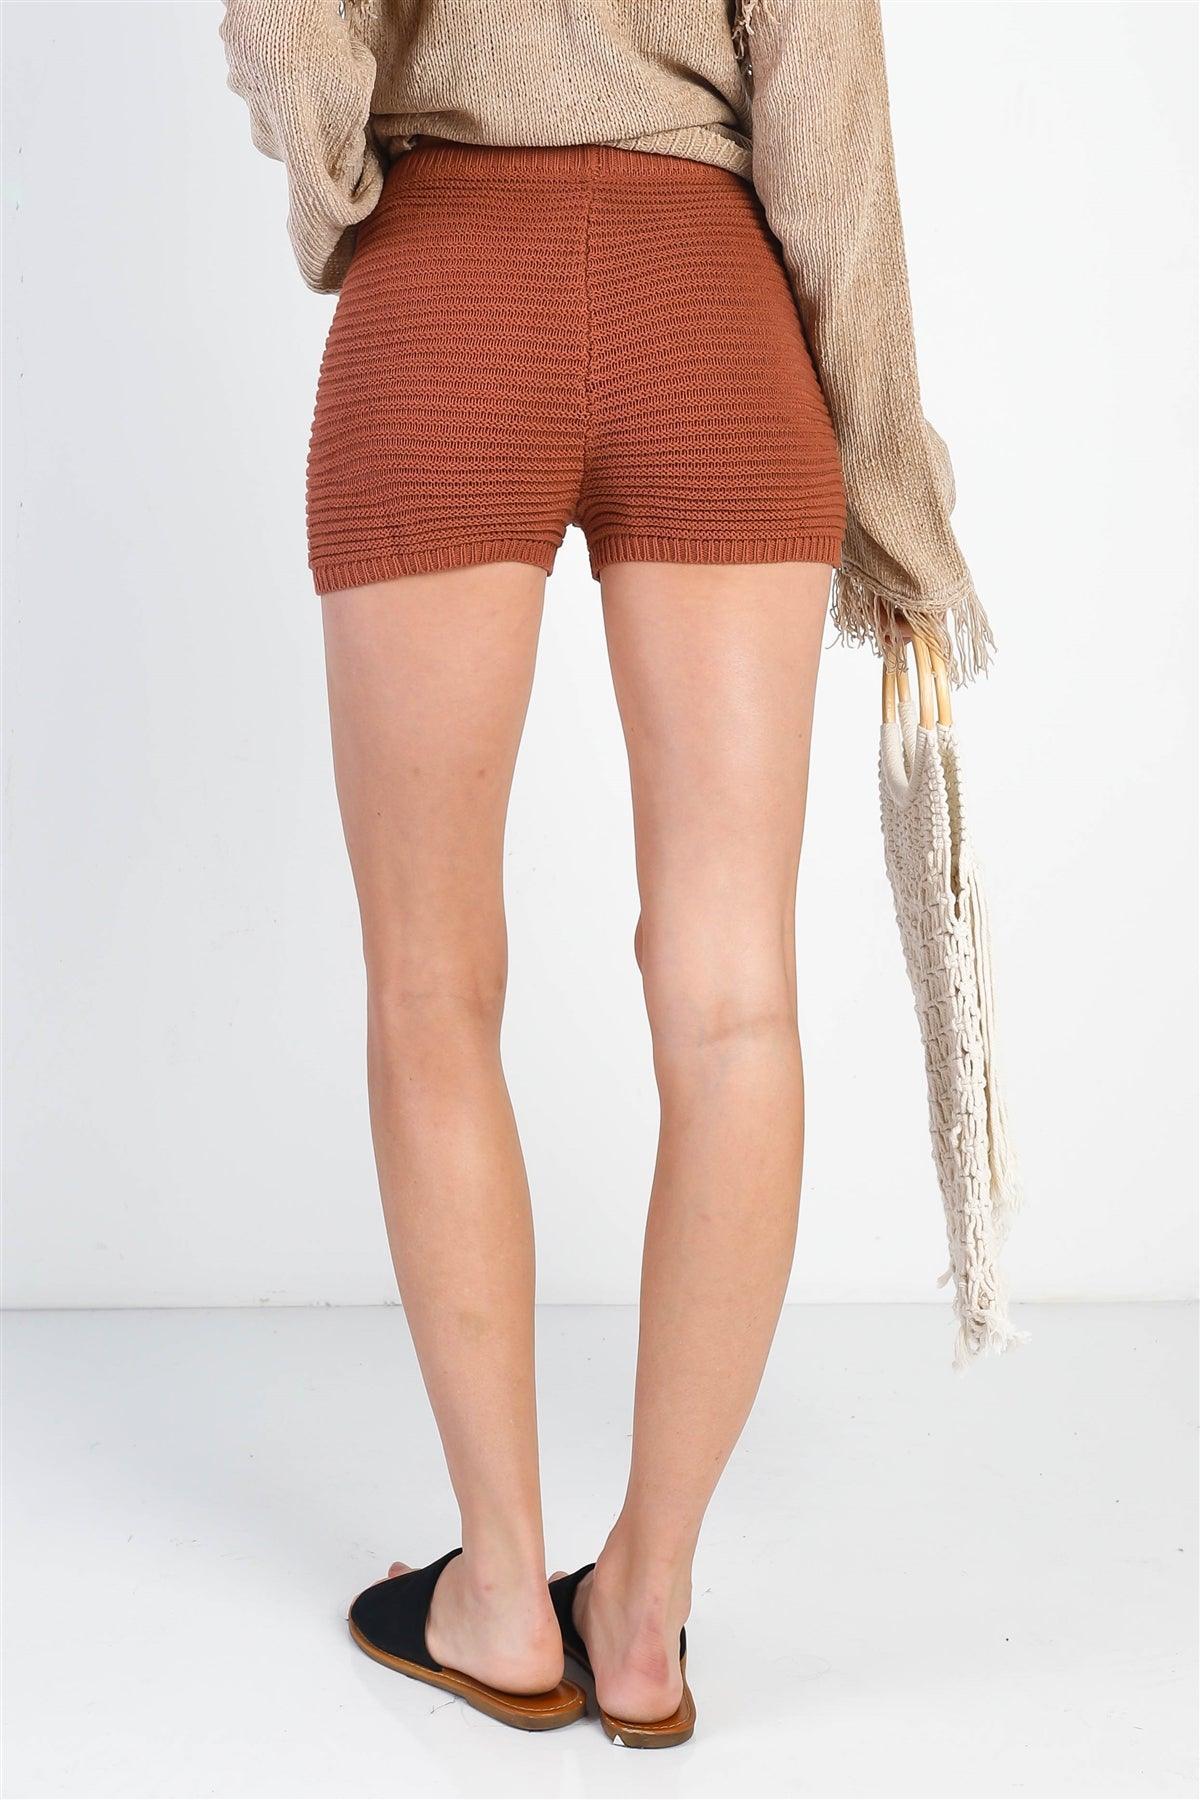 Brown Knit High Waist Shorts /3-2-1